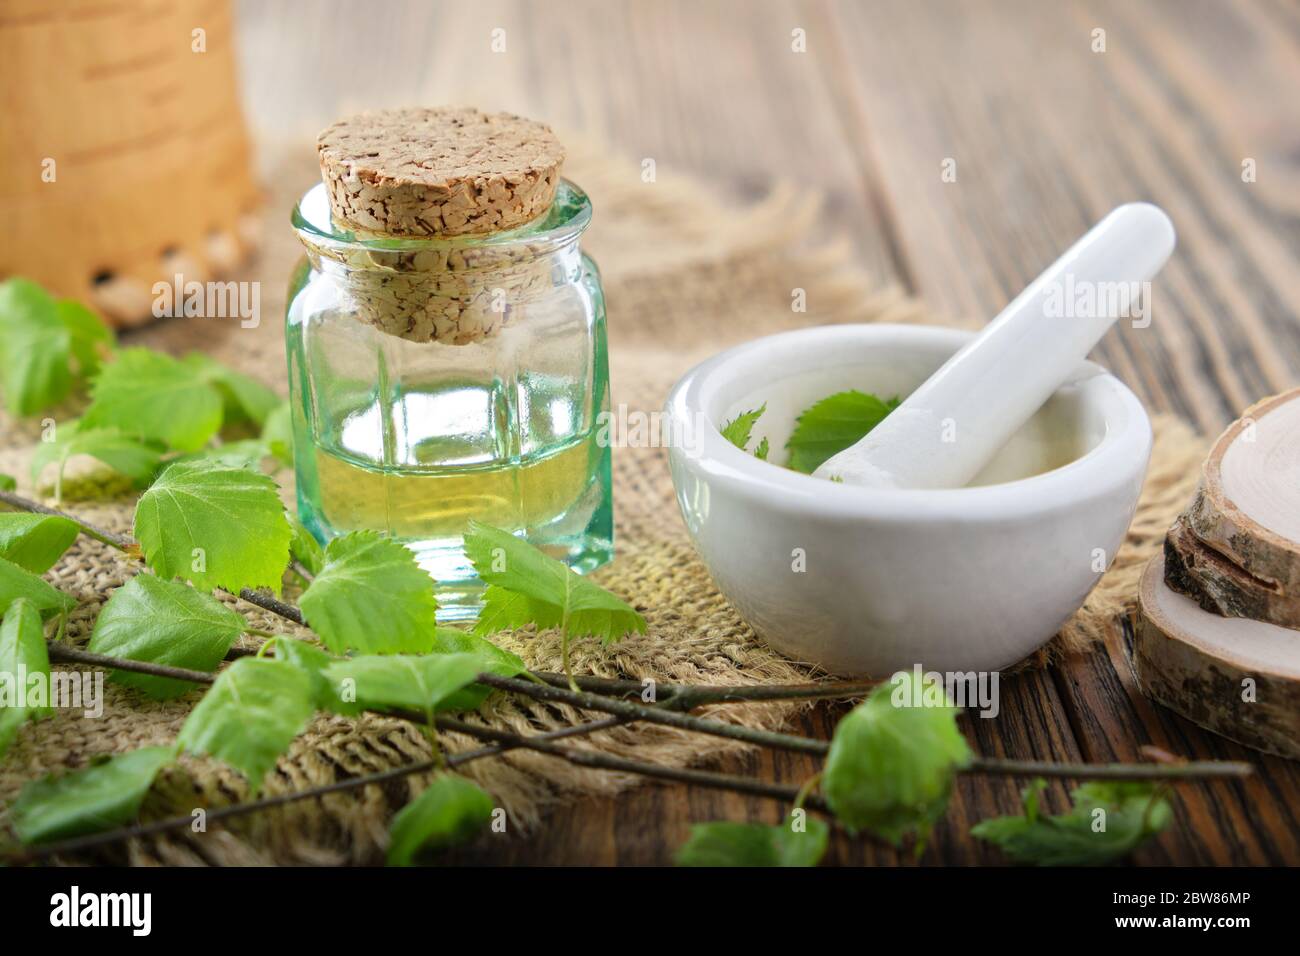 Botella de vidrio de aceite esencial de abedul, infusión de hierbas o jugo. Ramitas de abedul con hojas, tijeras y mortero sobre la mesa. Foto de stock